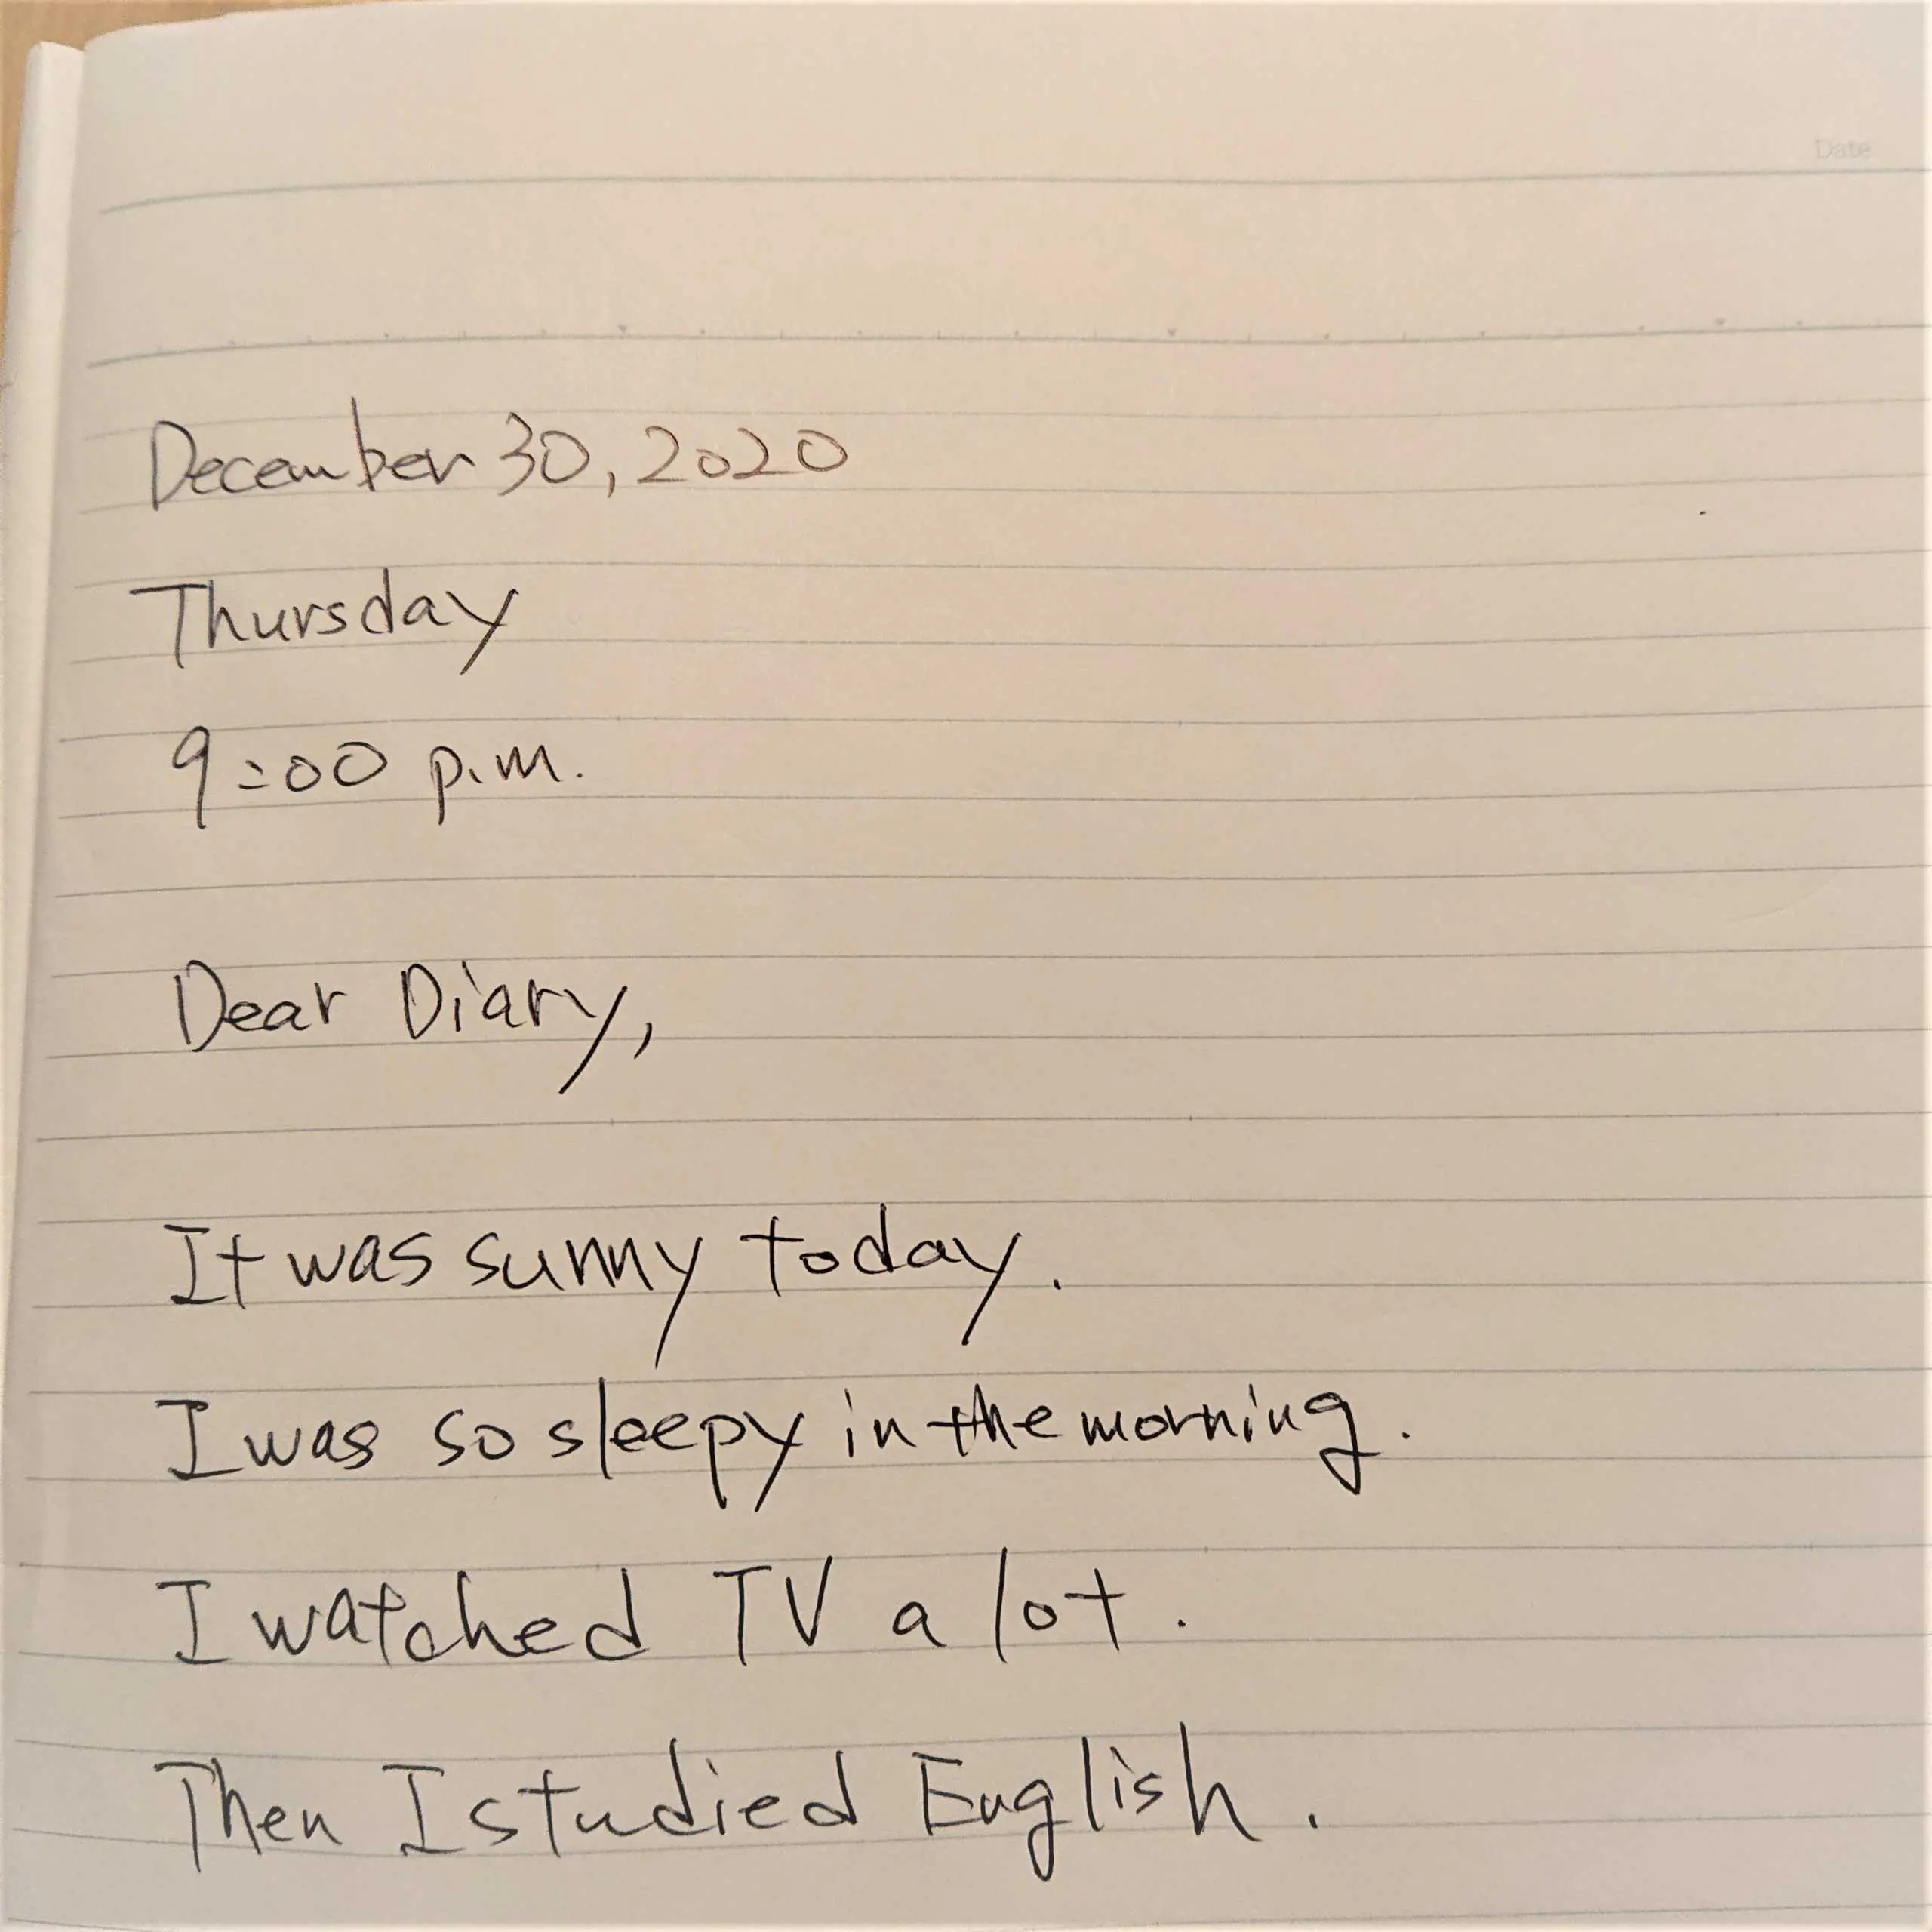 英語の日記はノートに書いた方がいい 2つの方法と実例画像など マイスキ英語